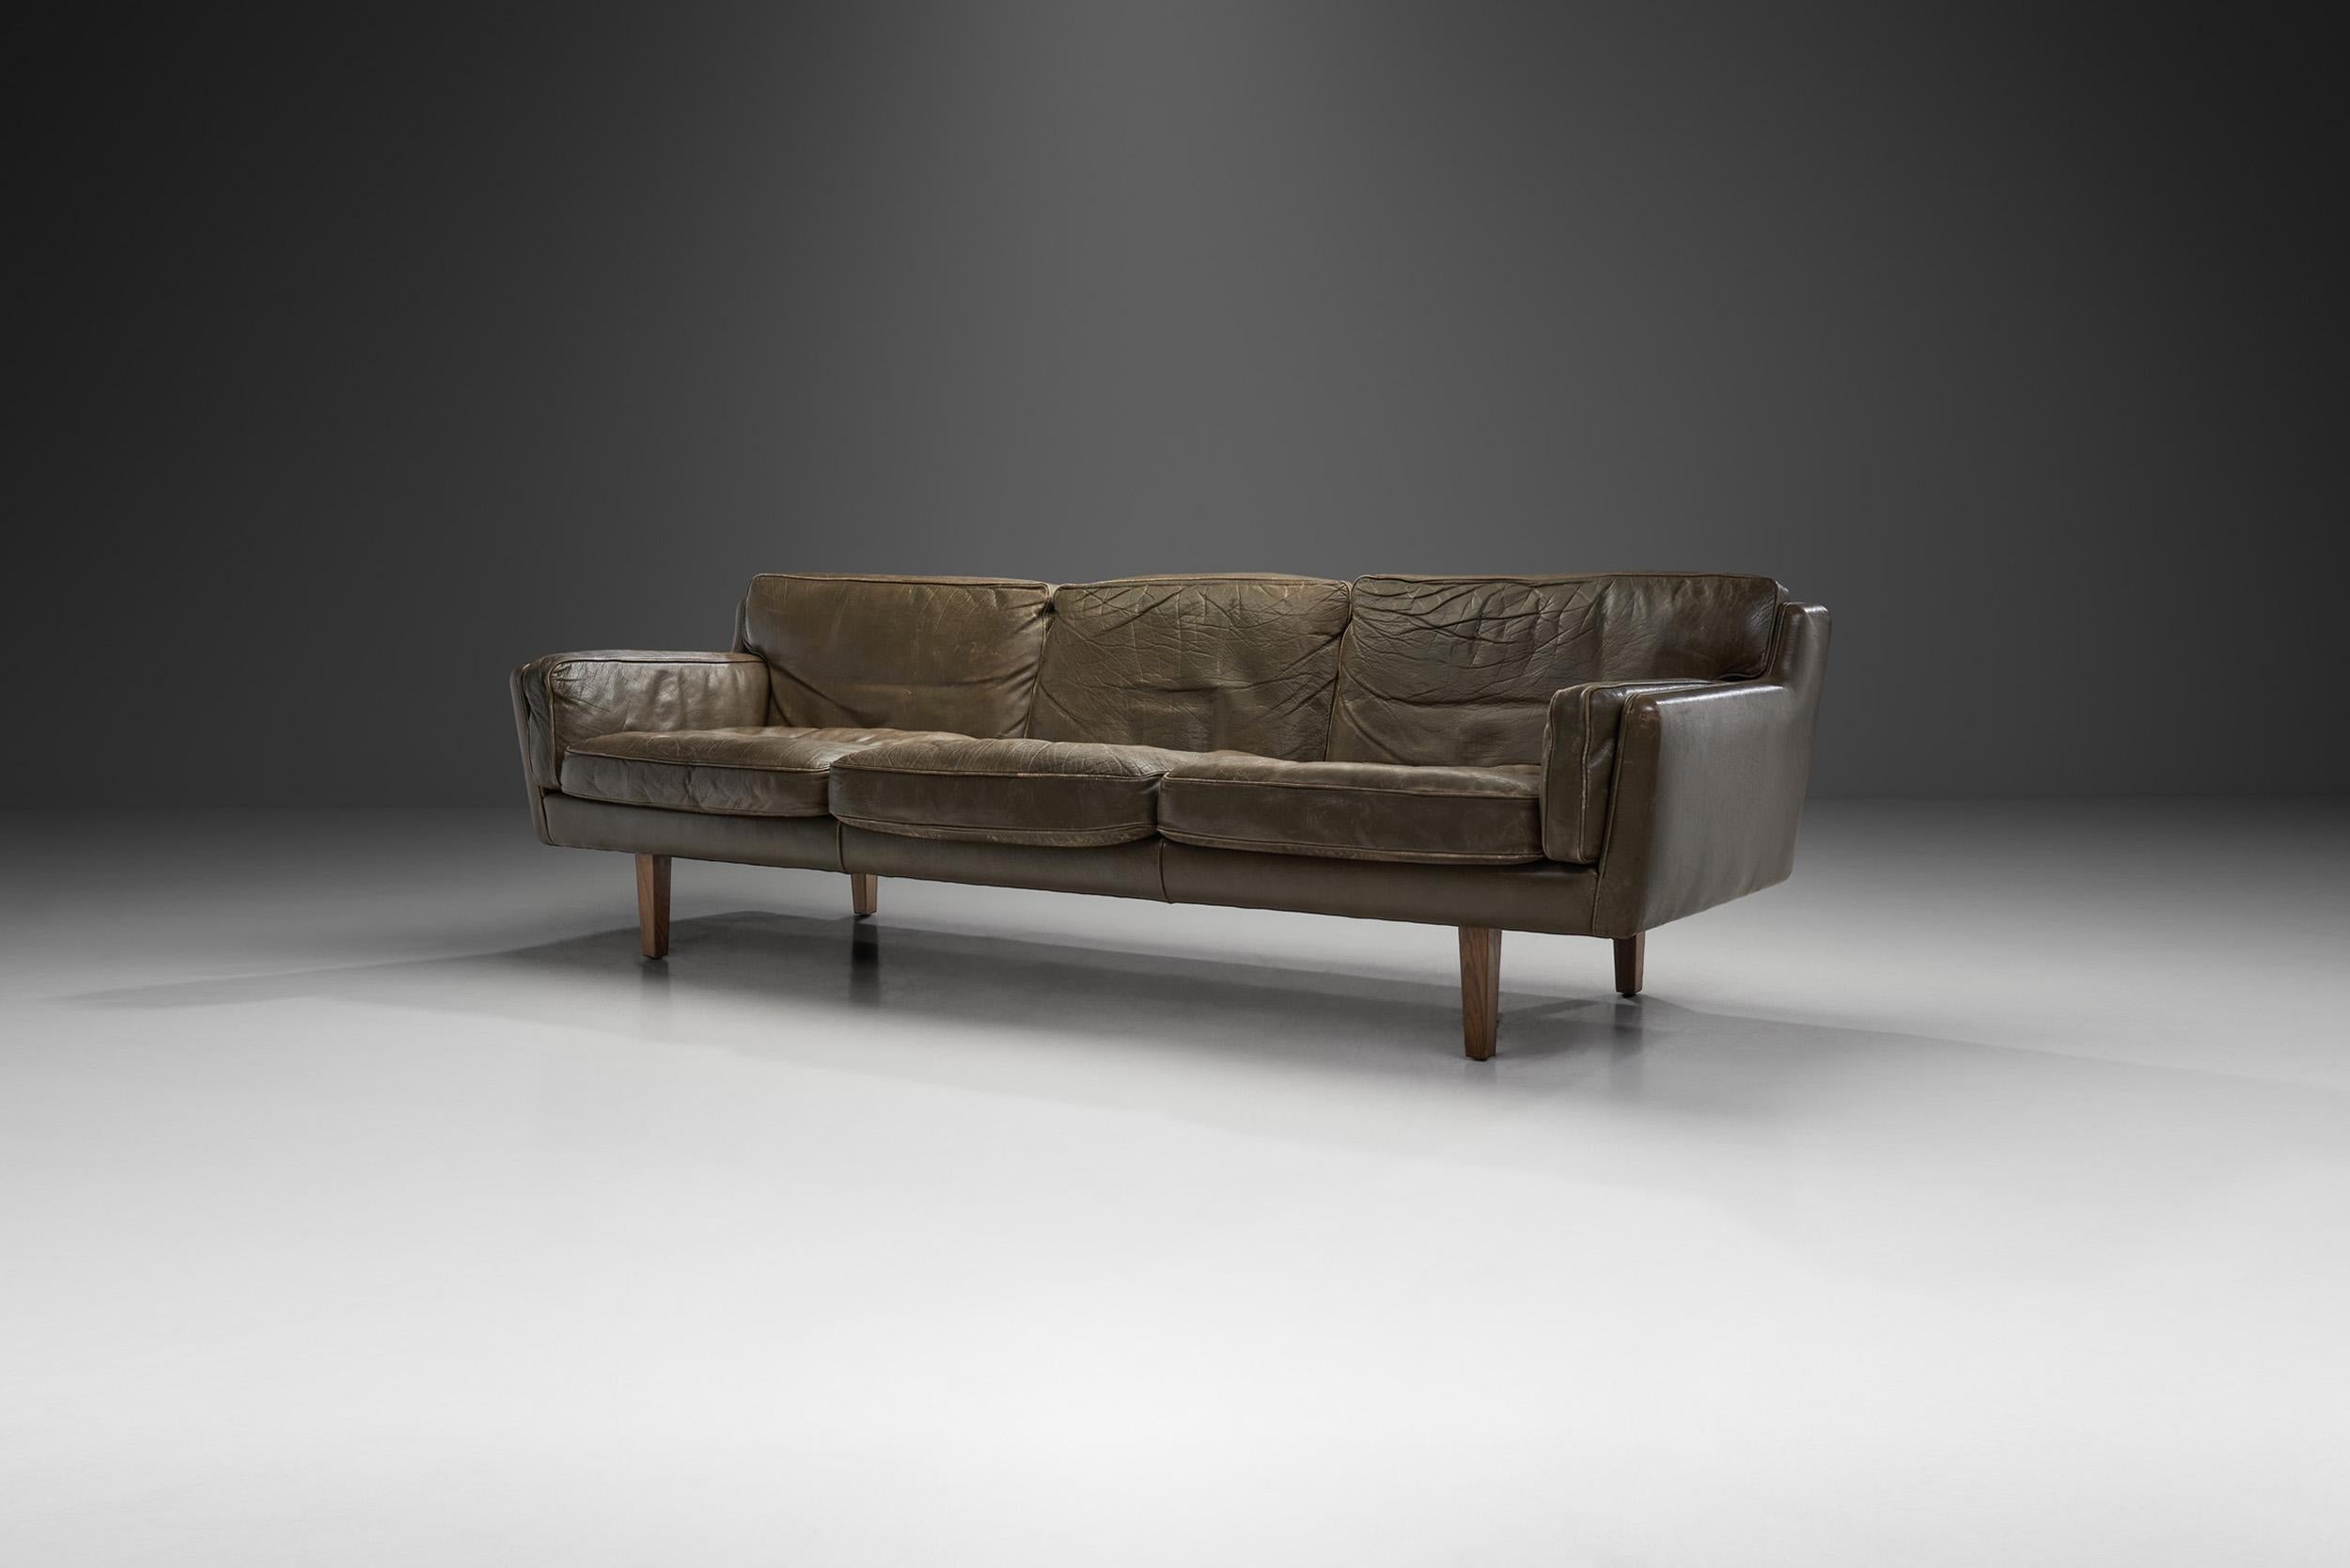 Dieses freistehende Sofa, besser bekannt unter dem Namen 